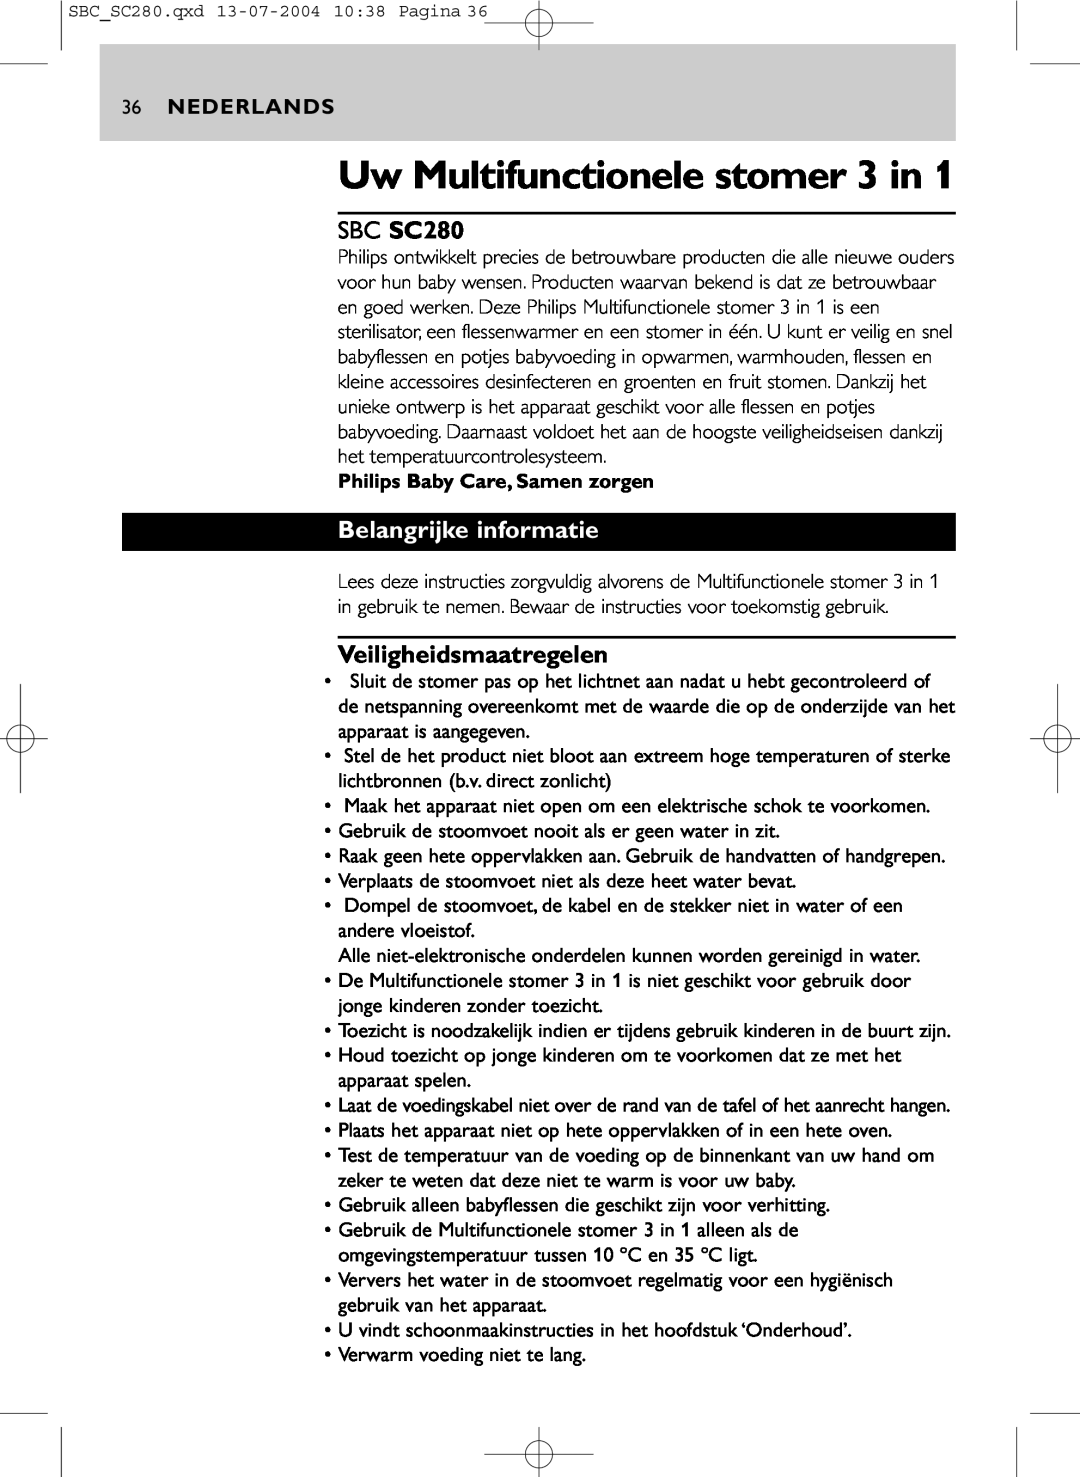 Philips manual SBC SC280, Belangrijke informatie, Veiligheidsmaatregelen, Nederlands, Uw Multifunctionele stomer 3 in 